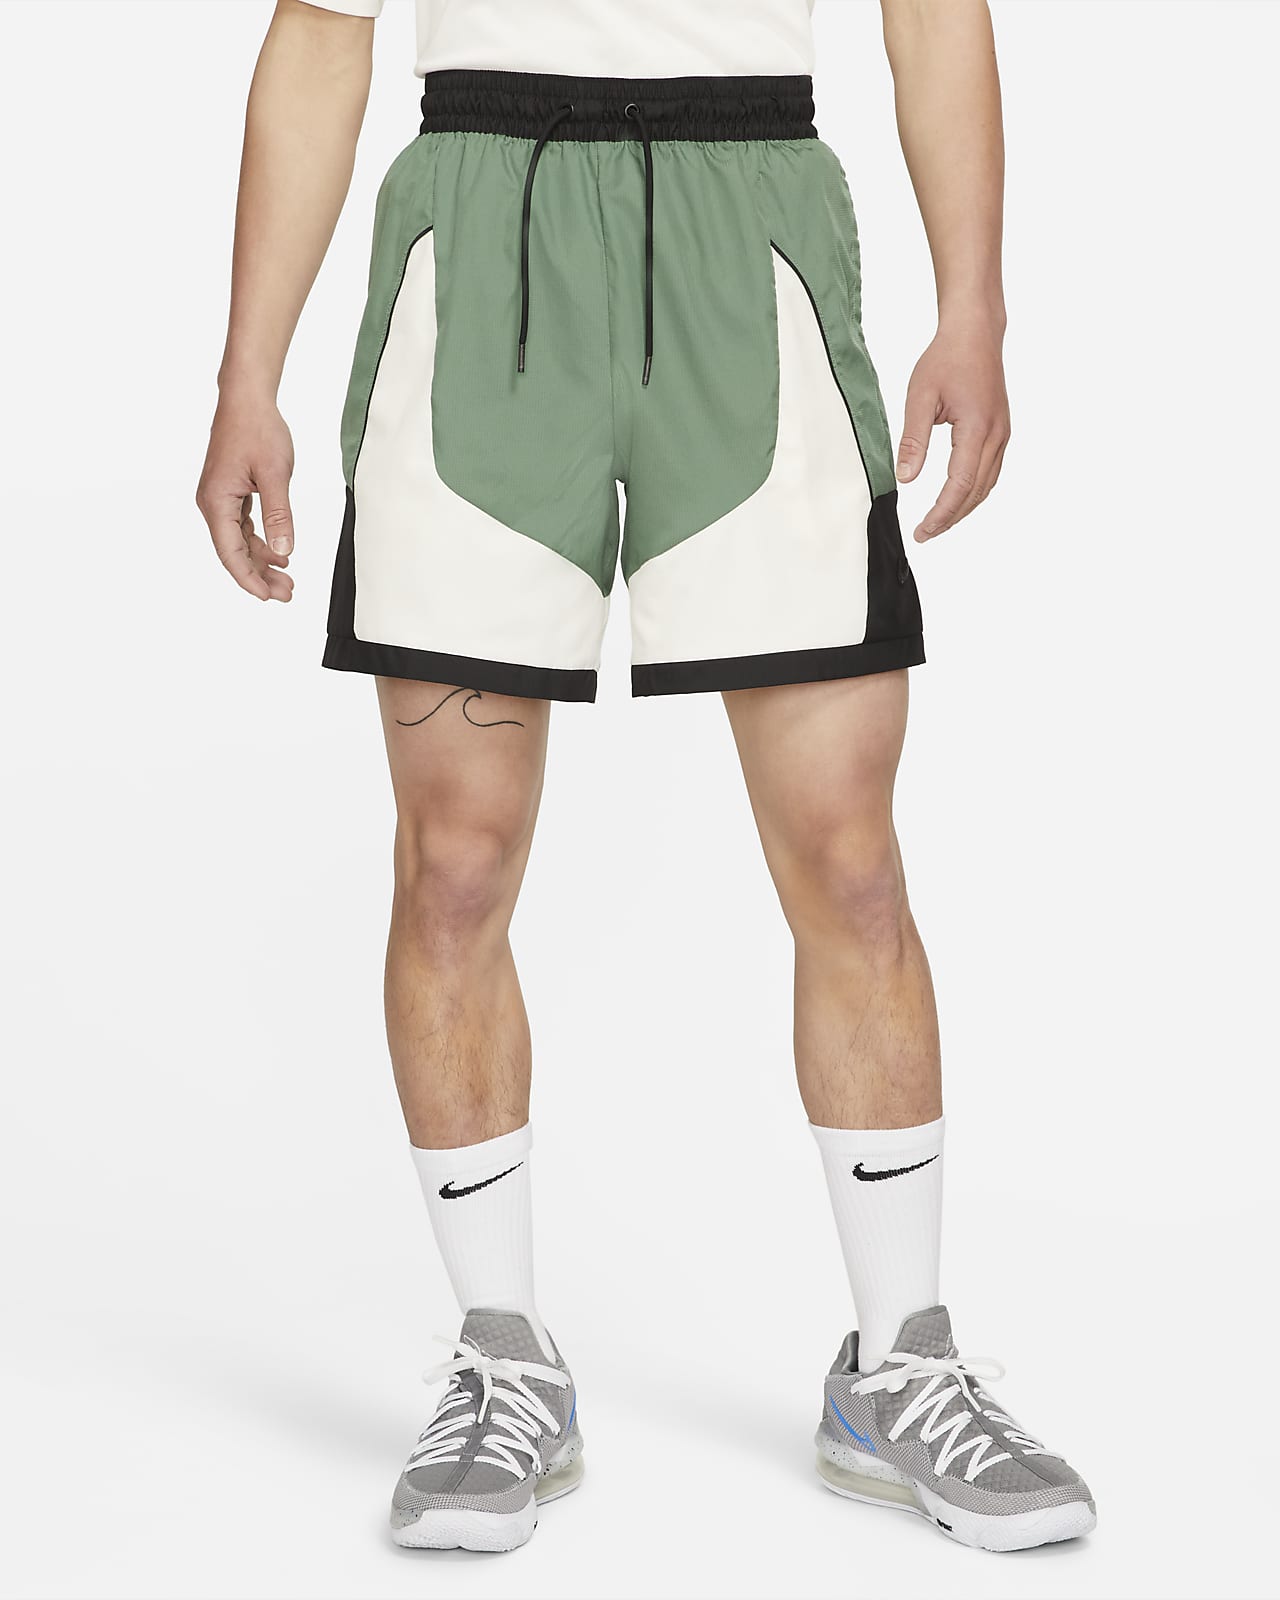 Vintage Nike Shorts Mens XL Green Basketball Shimmer Athletic Y2K – Proper  Vintage